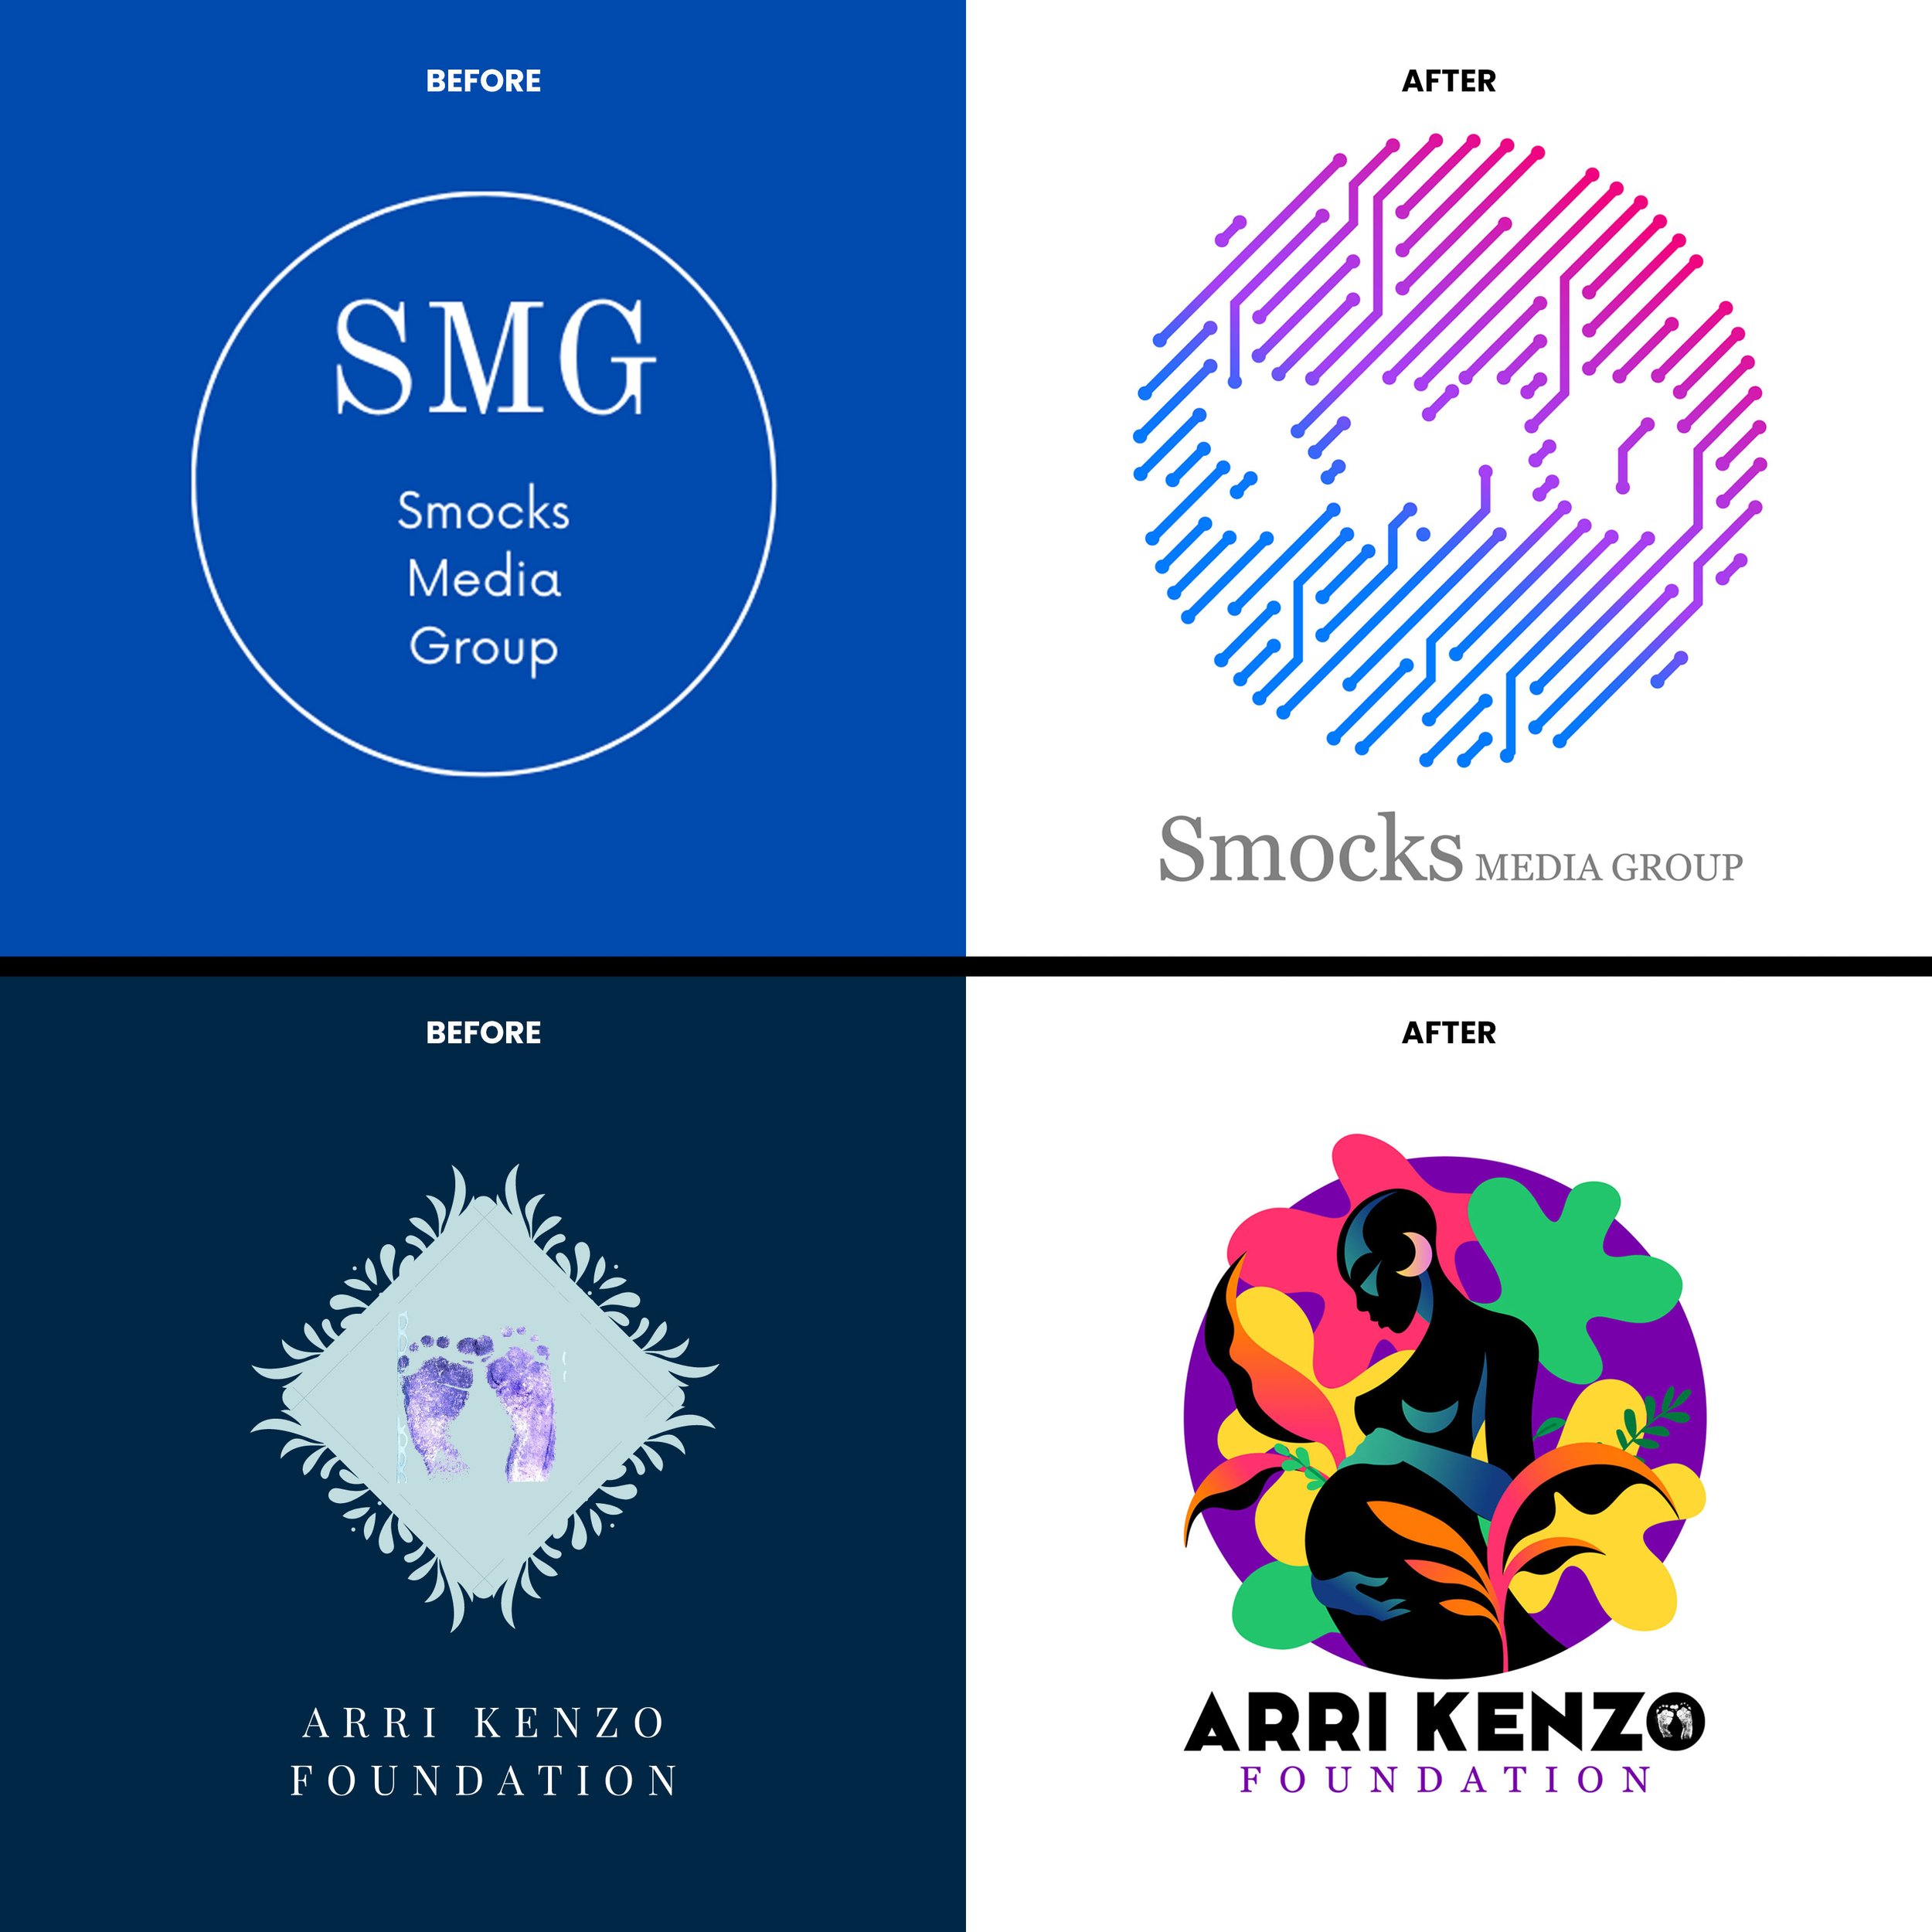 SMG-Logos-BeforeAndAfter 2.jpg